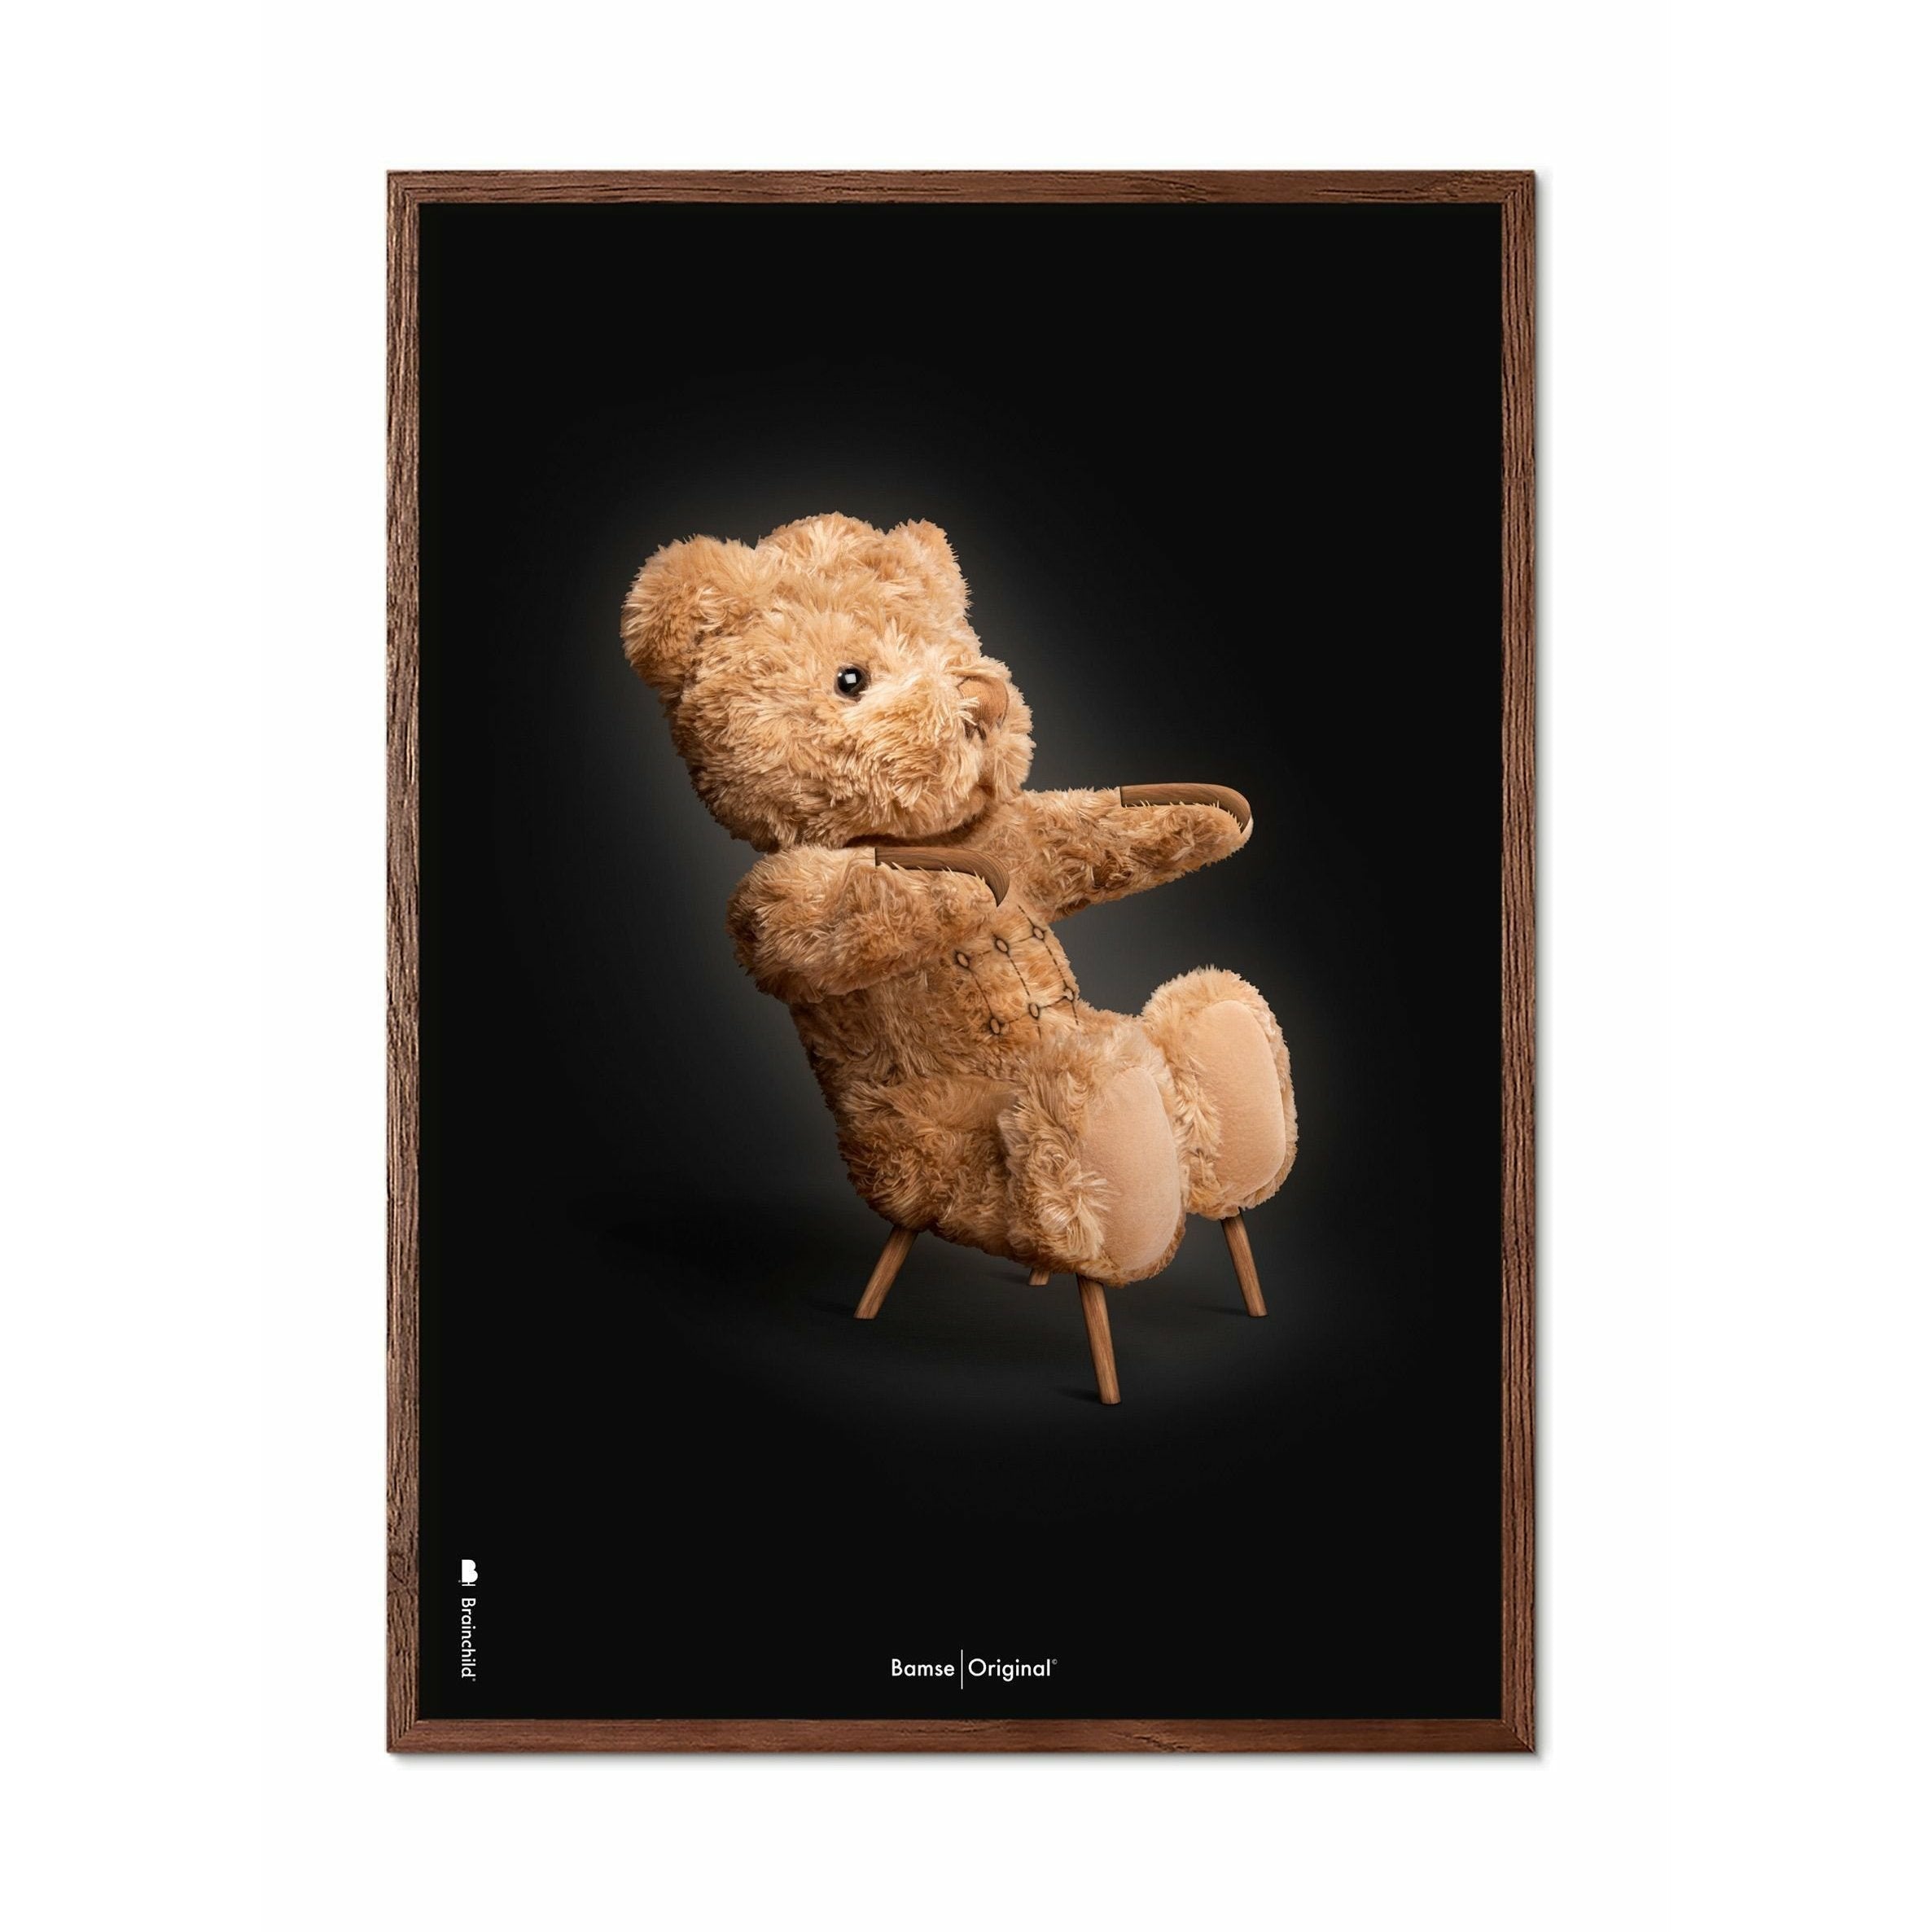 Brainchild Teddy Bear Classic Poster, Frame Made of Dark Wood 30x40 cm, svart bakgrunn